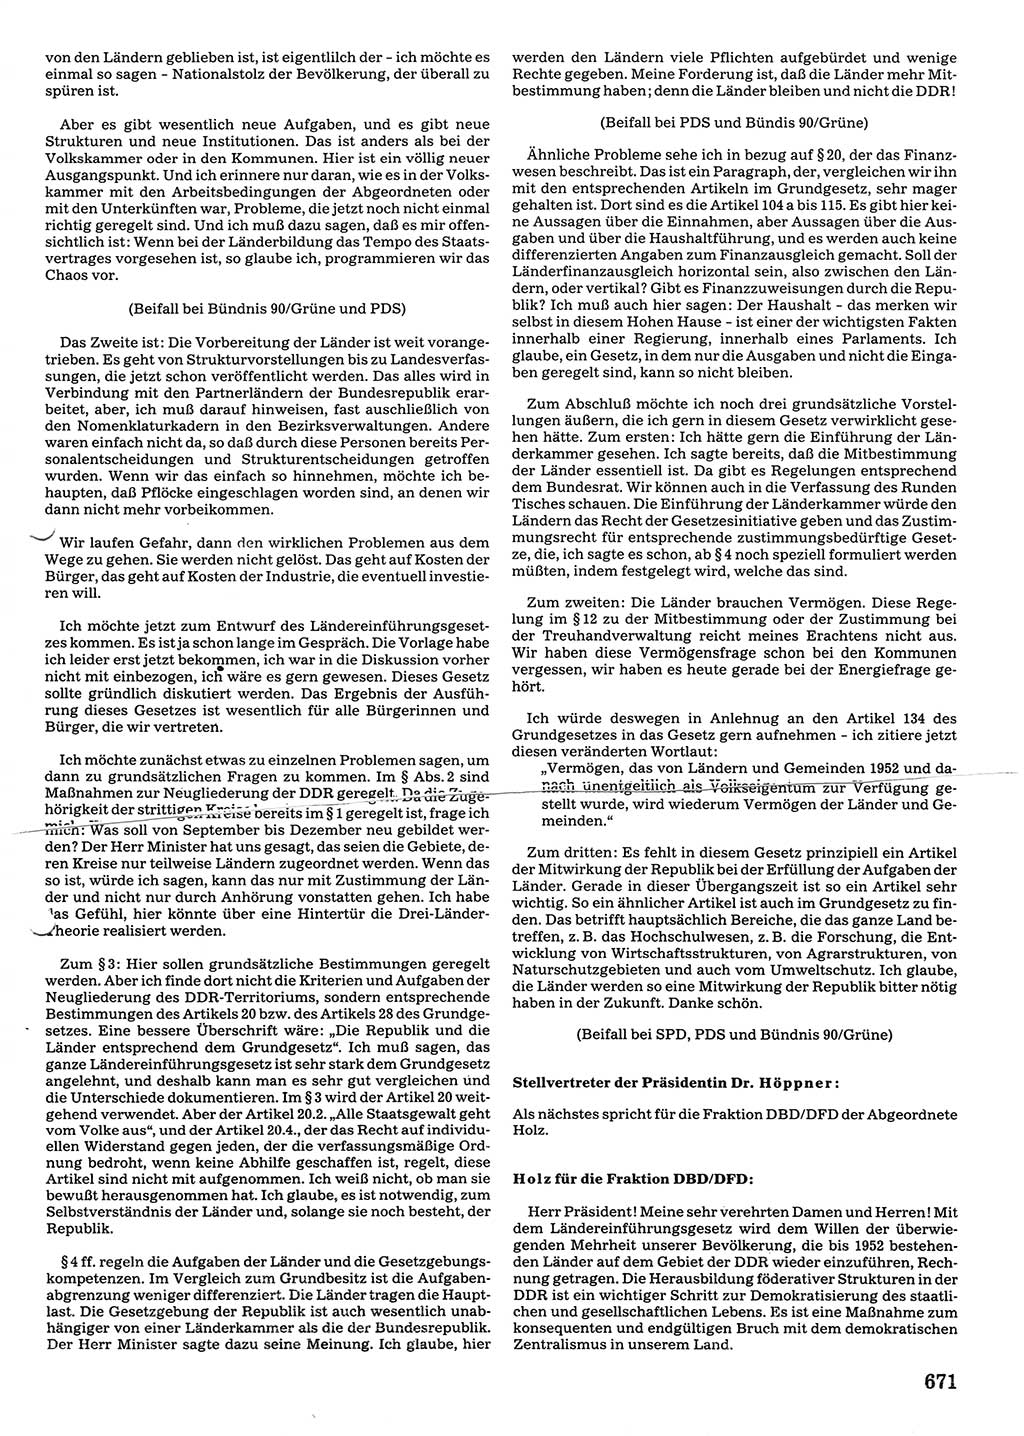 Tagungen der Volkskammer (VK) der Deutschen Demokratischen Republik (DDR), 10. Wahlperiode 1990, Seite 671 (VK. DDR 10. WP. 1990, Prot. Tg. 1-38, 5.4.-2.10.1990, S. 671)